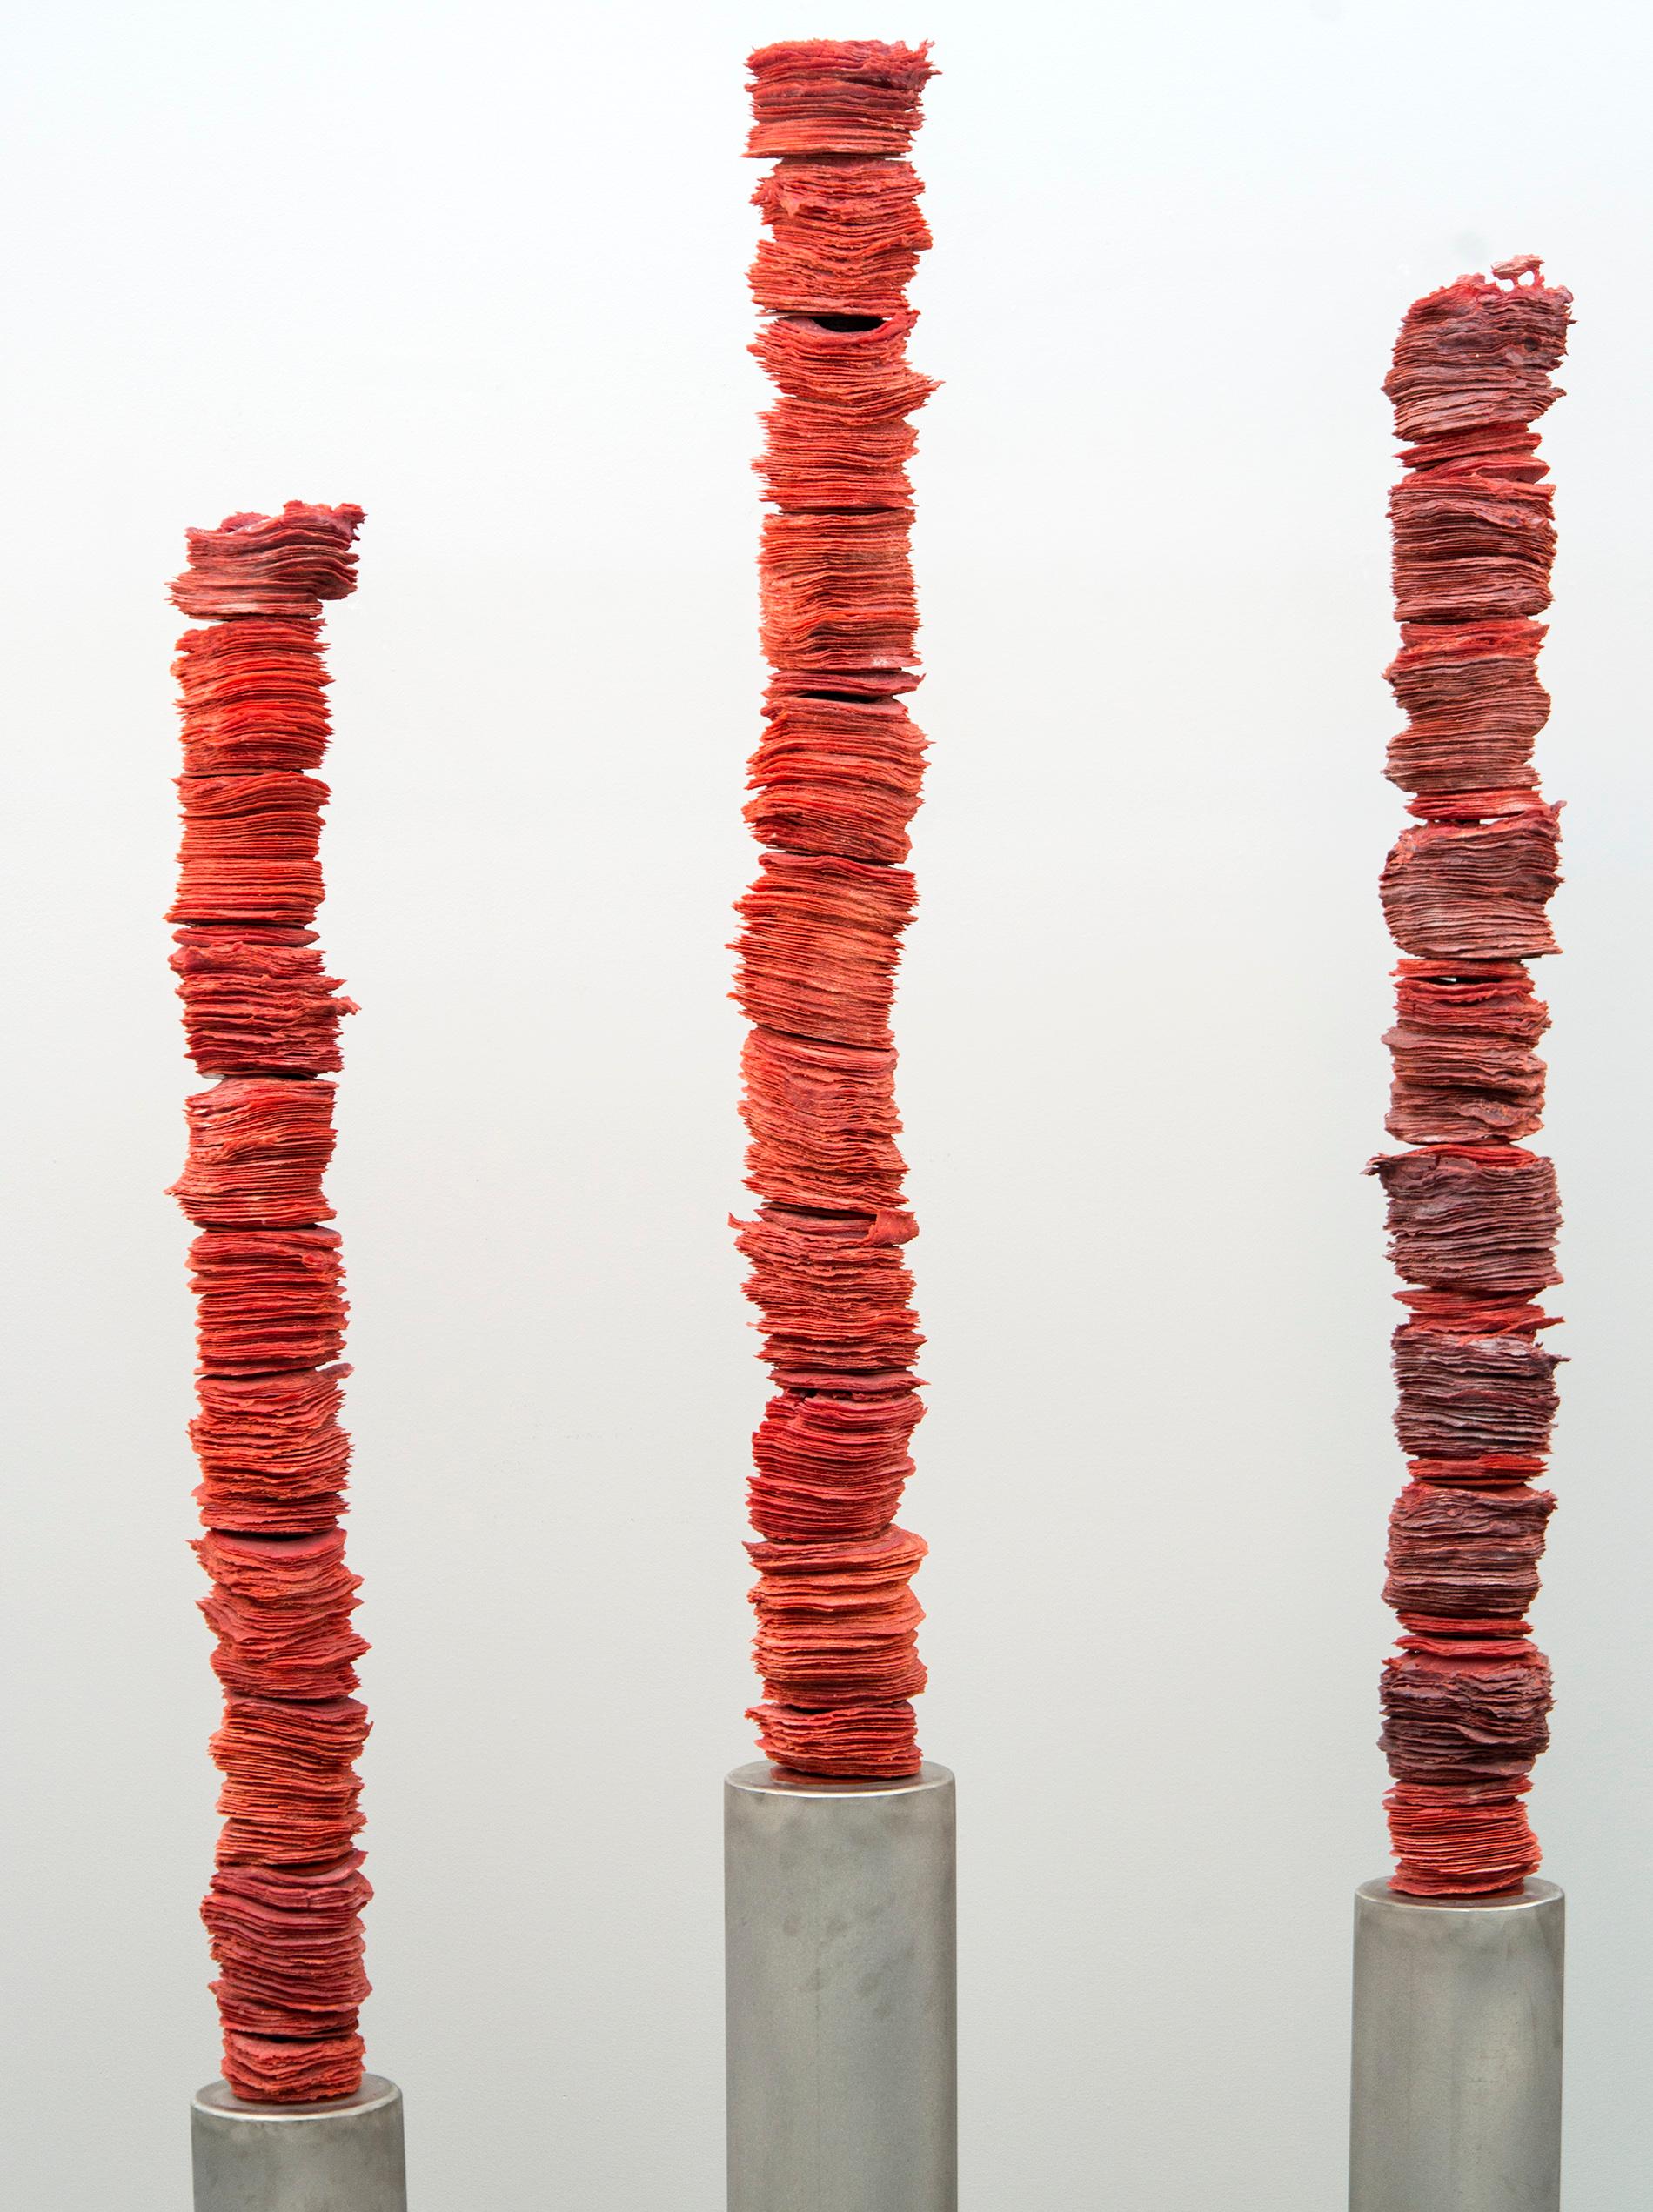 Papierdünne Schichten aus tiefroter Glasfritte (spezielles gemahlenes Glas) werden in diesen auffälligen Säulen der kanadischen Künstlerin Cheryl Wilson-Smith sorgfältig aufeinander geschichtet und verschmolzen.

Die Abmessungen jeder Säule sind